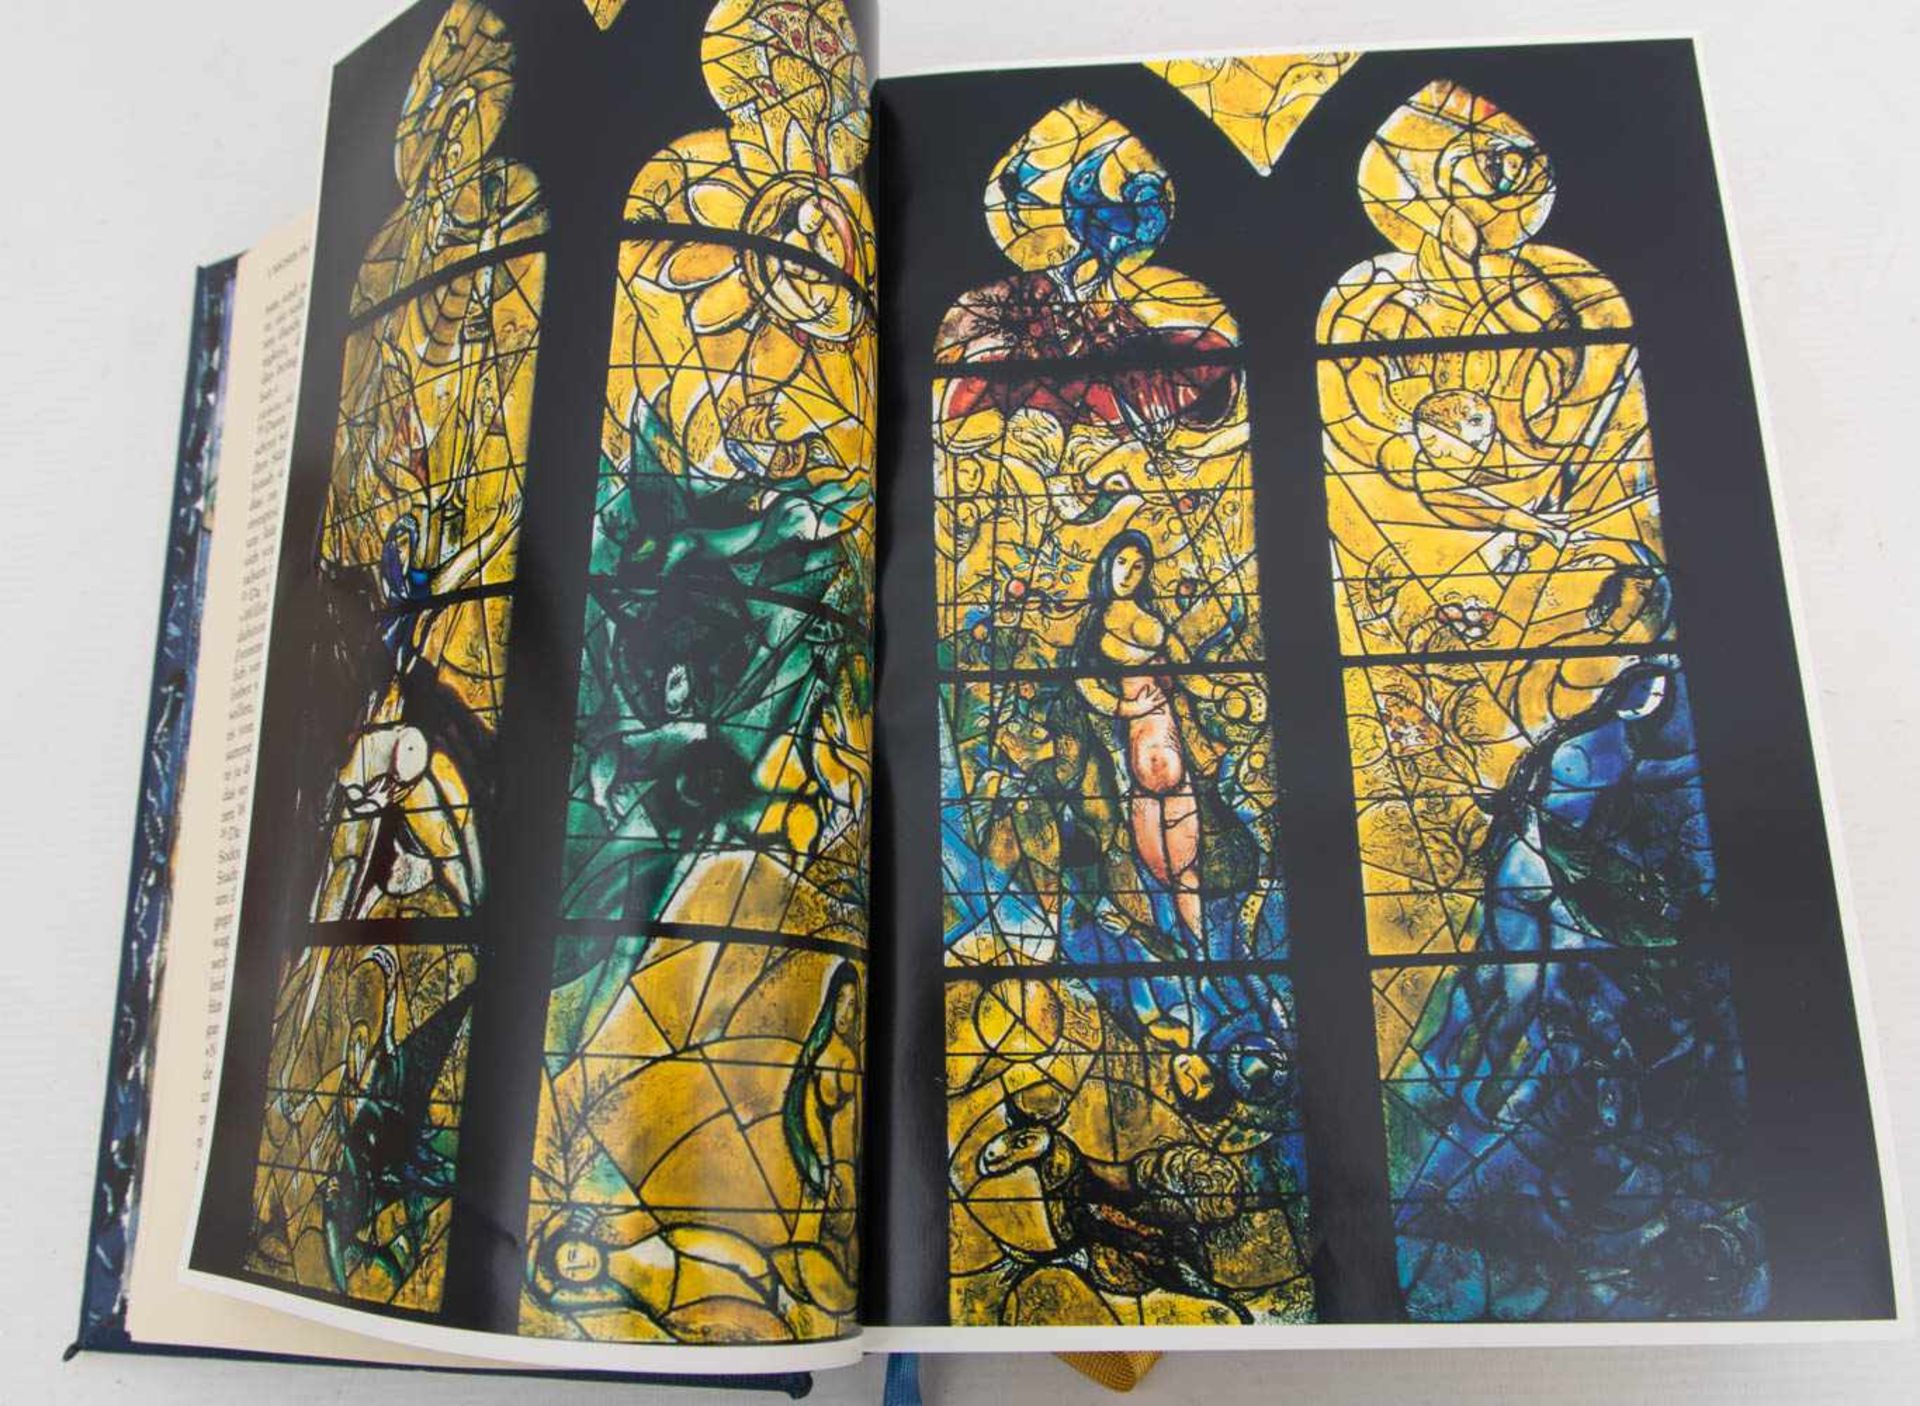 BIBEL MIT BILDERN VON MARC CHAGALL, Pattloch Verlag, Deutschland, 1990.Sehr guter Zustand. 21 x 29 - Bild 4 aus 4